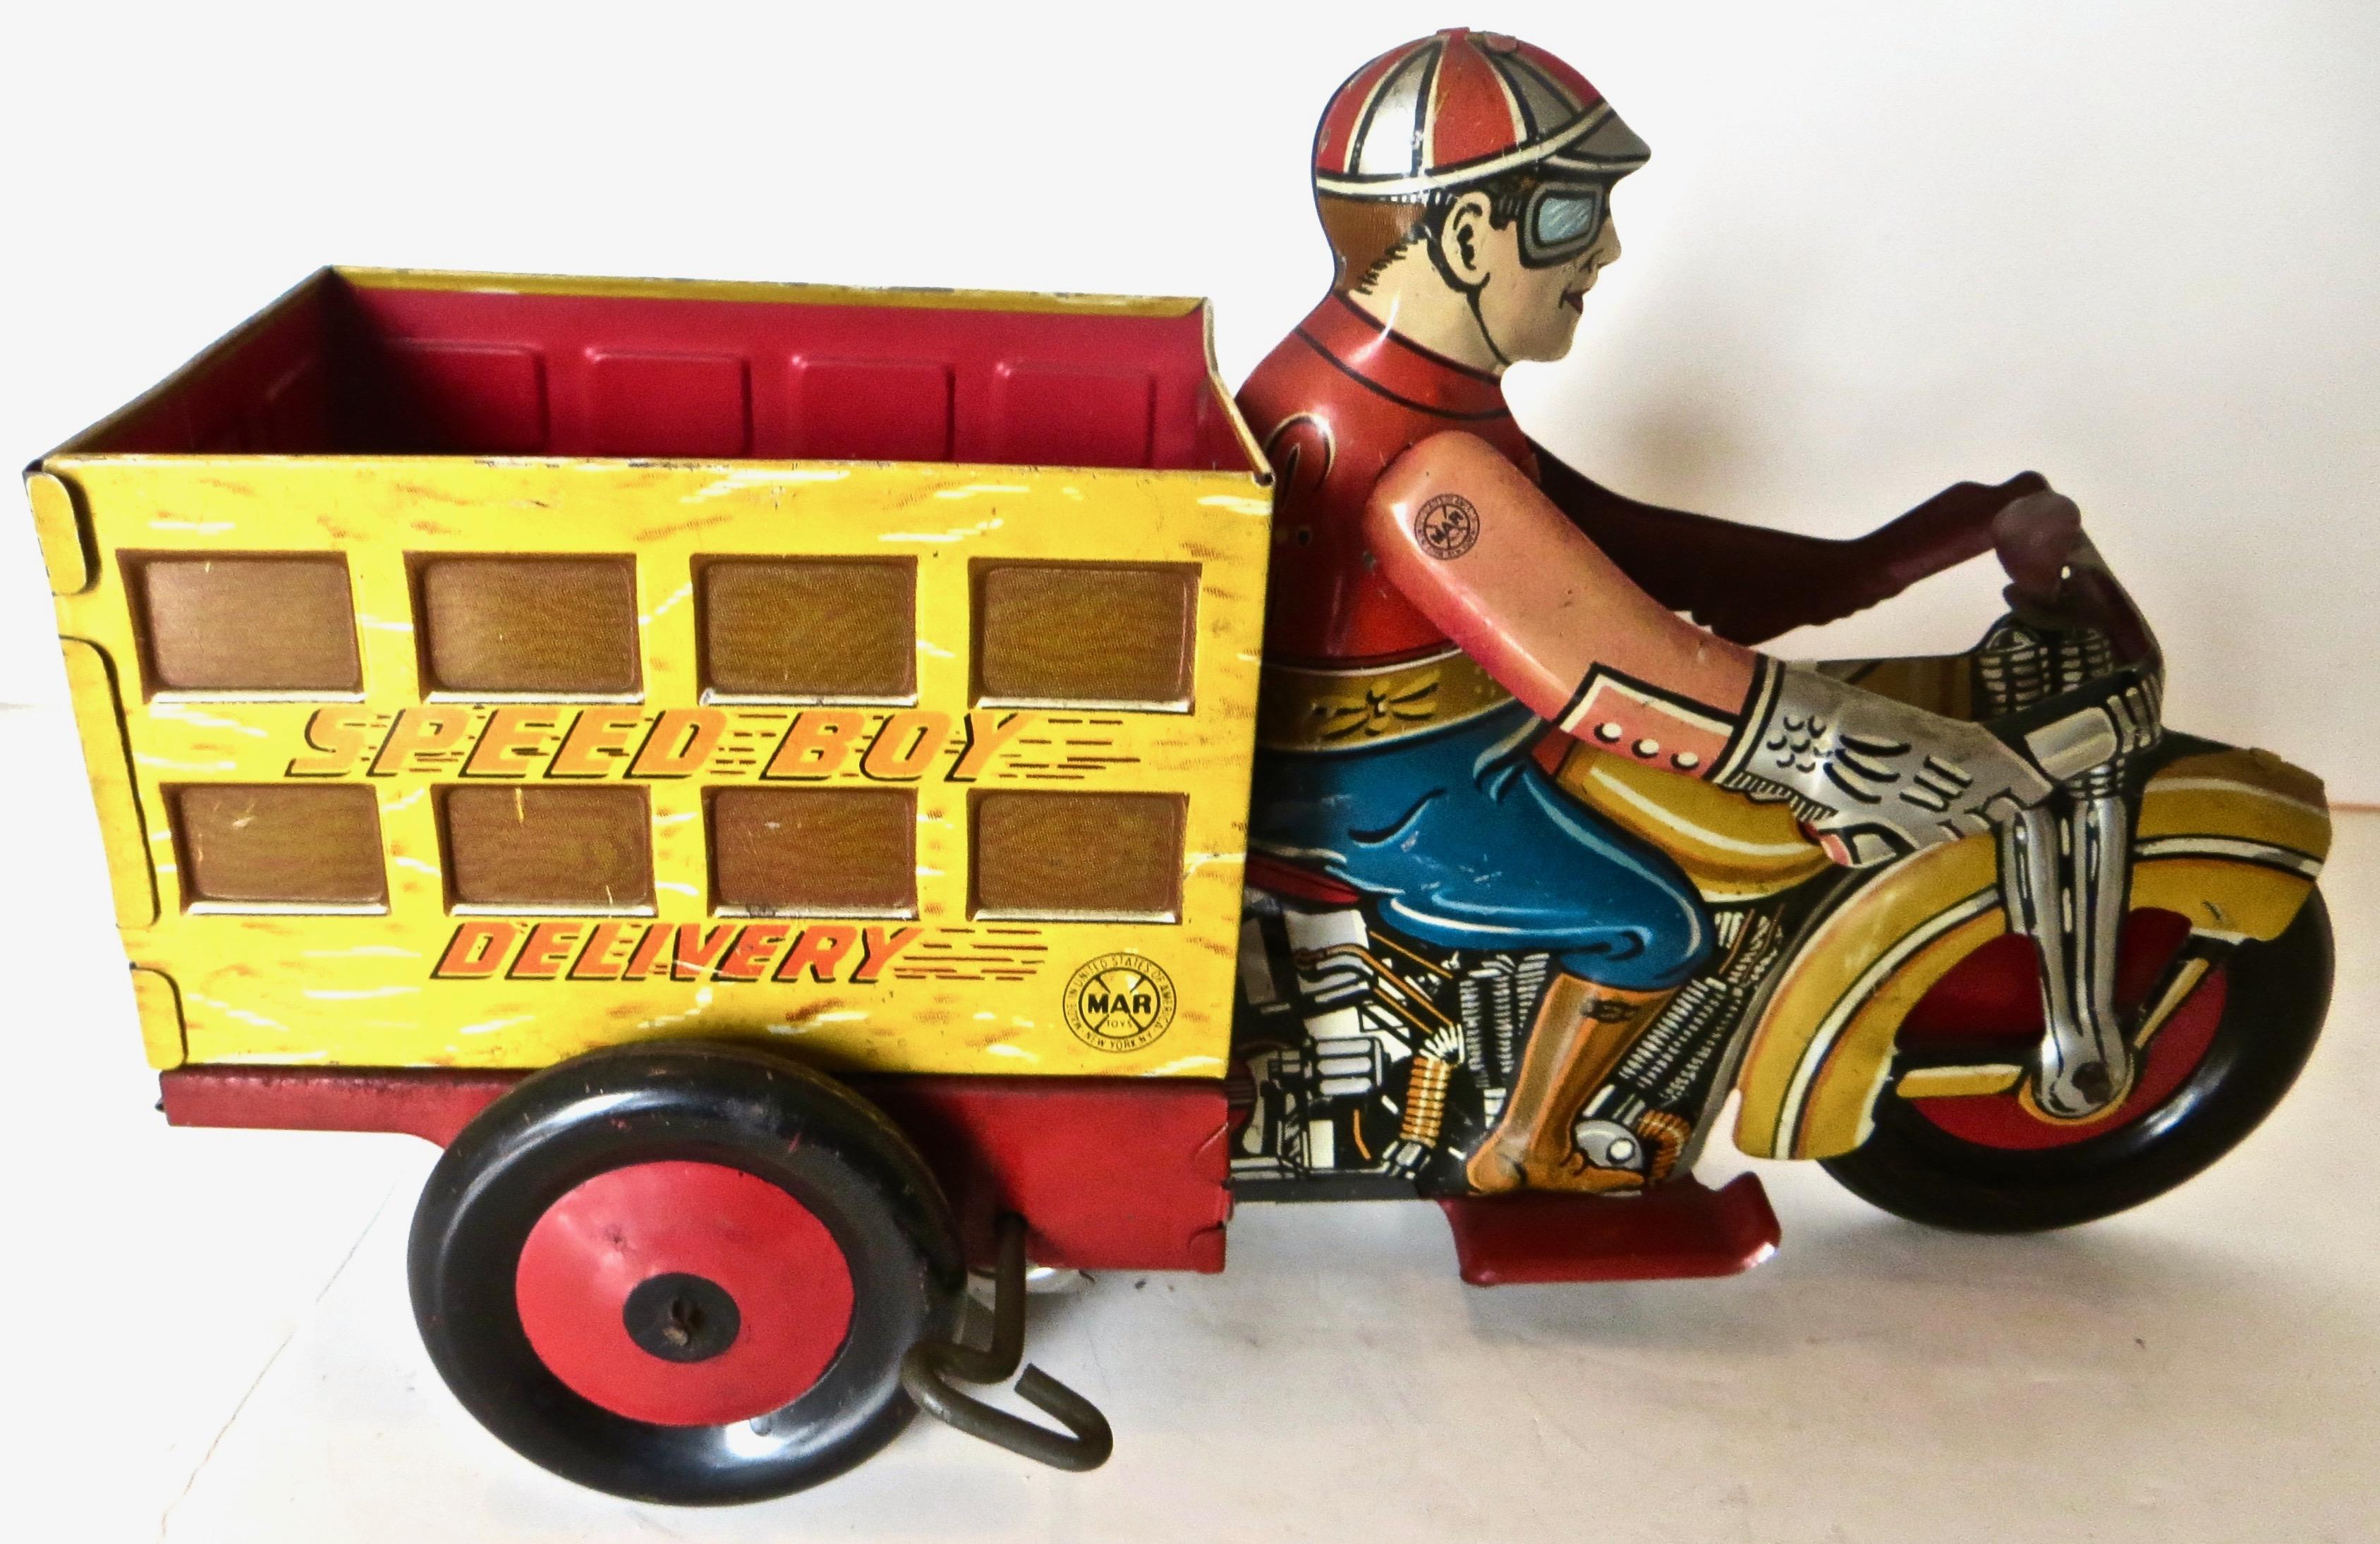 Dieses bunt lithografierte Aufziehspielzeug aus Blech in den Farben Rot, Gelb und Blau mit einem Fahrer in passender Motorradkleidung zeigt einen jungen Mann, der einen Lieferwagen mit dem Aufdruck 